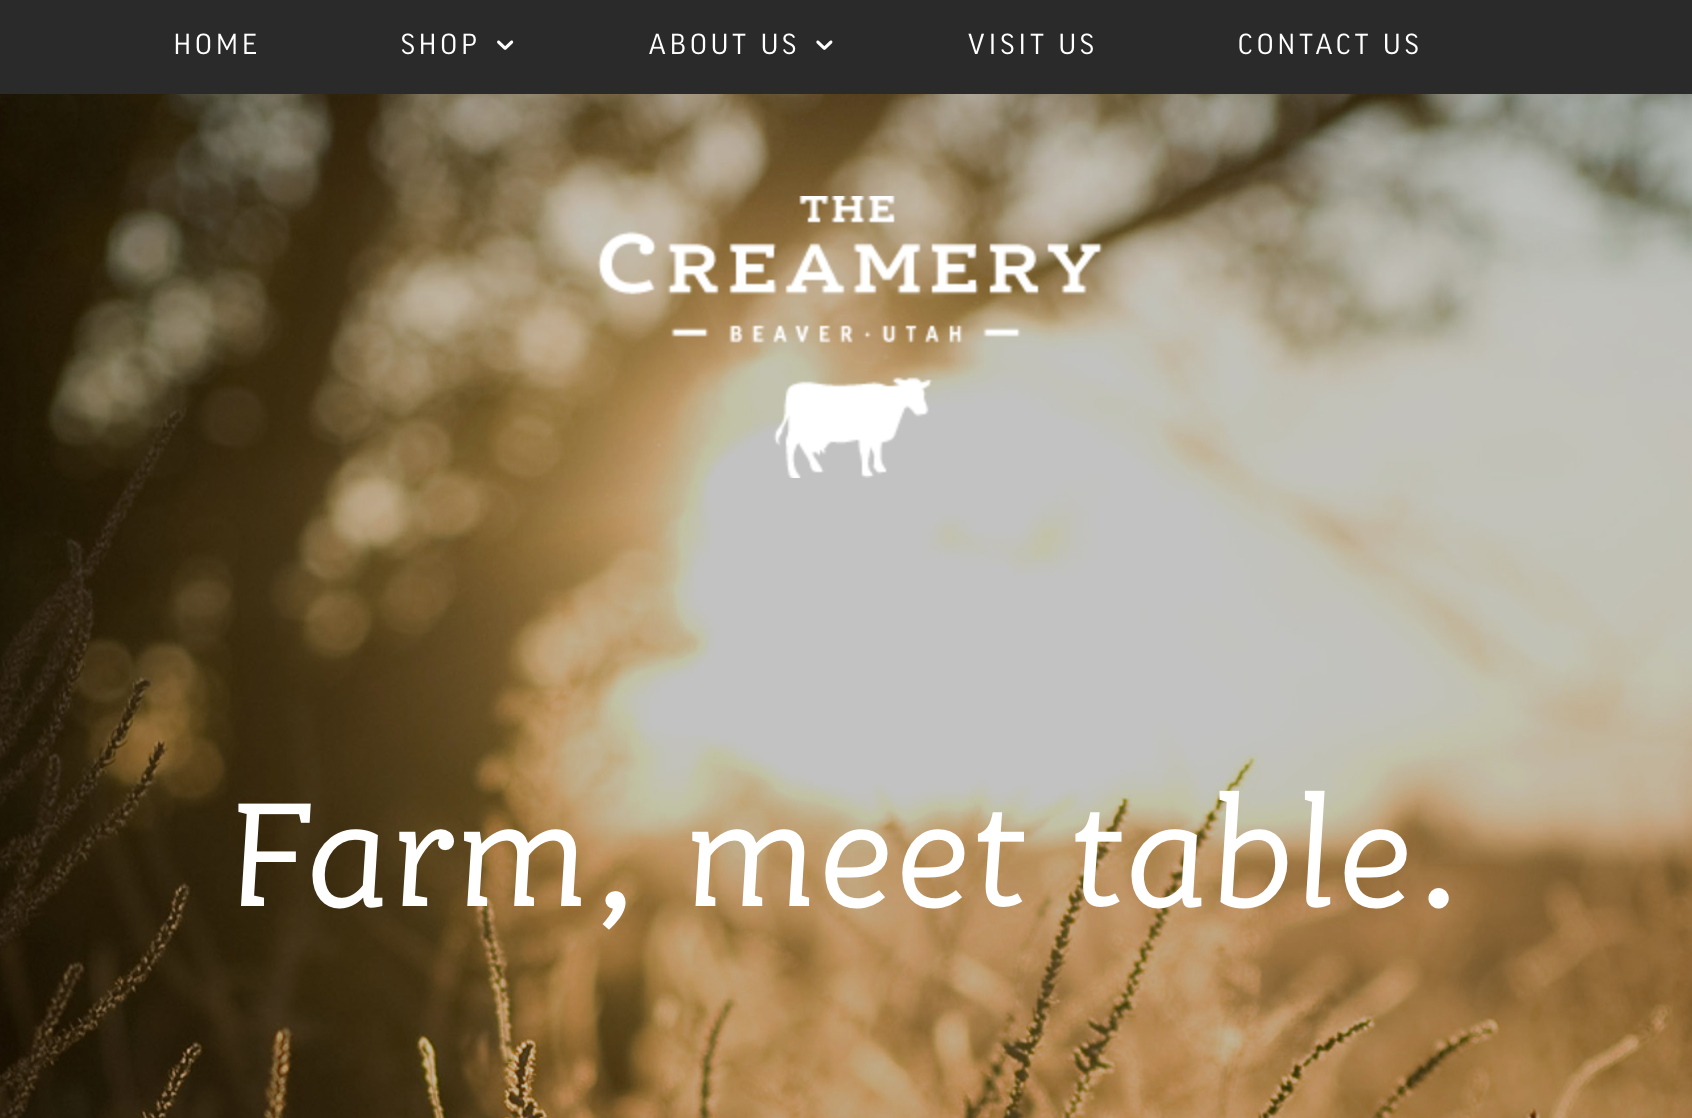 The Creamery Website image